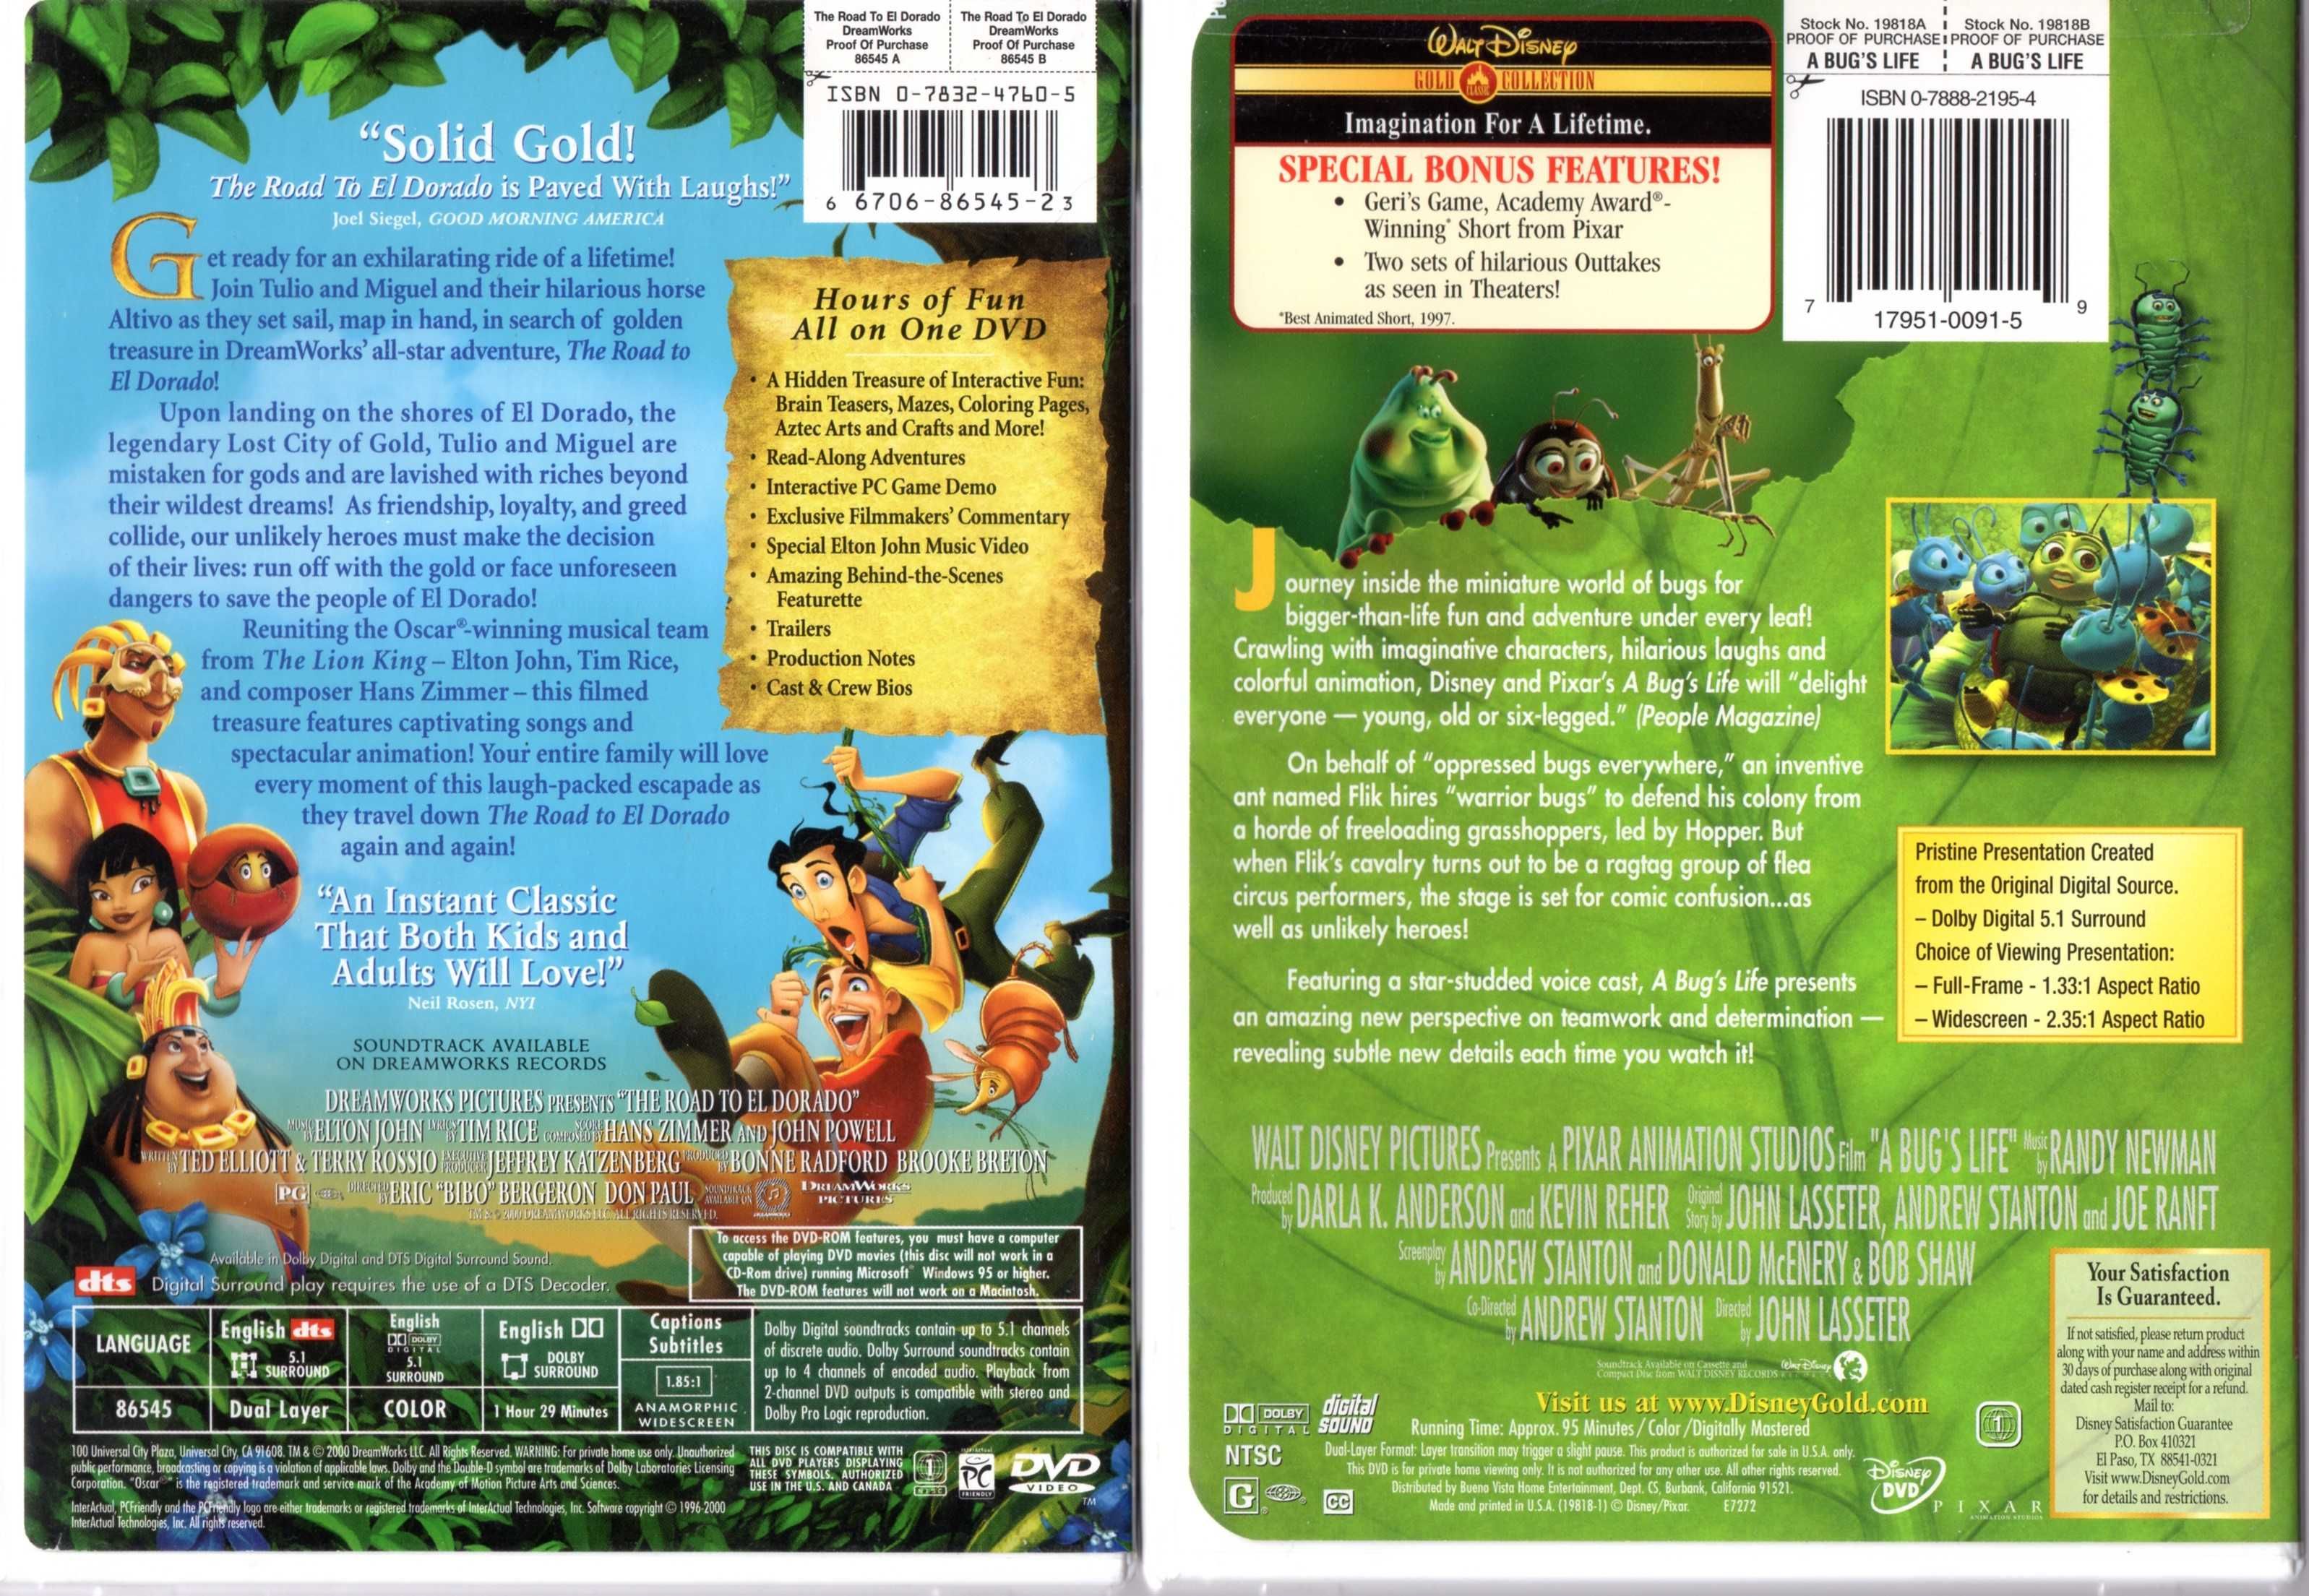 Американские оригинальные DVD диски с мультфильмами регион 1